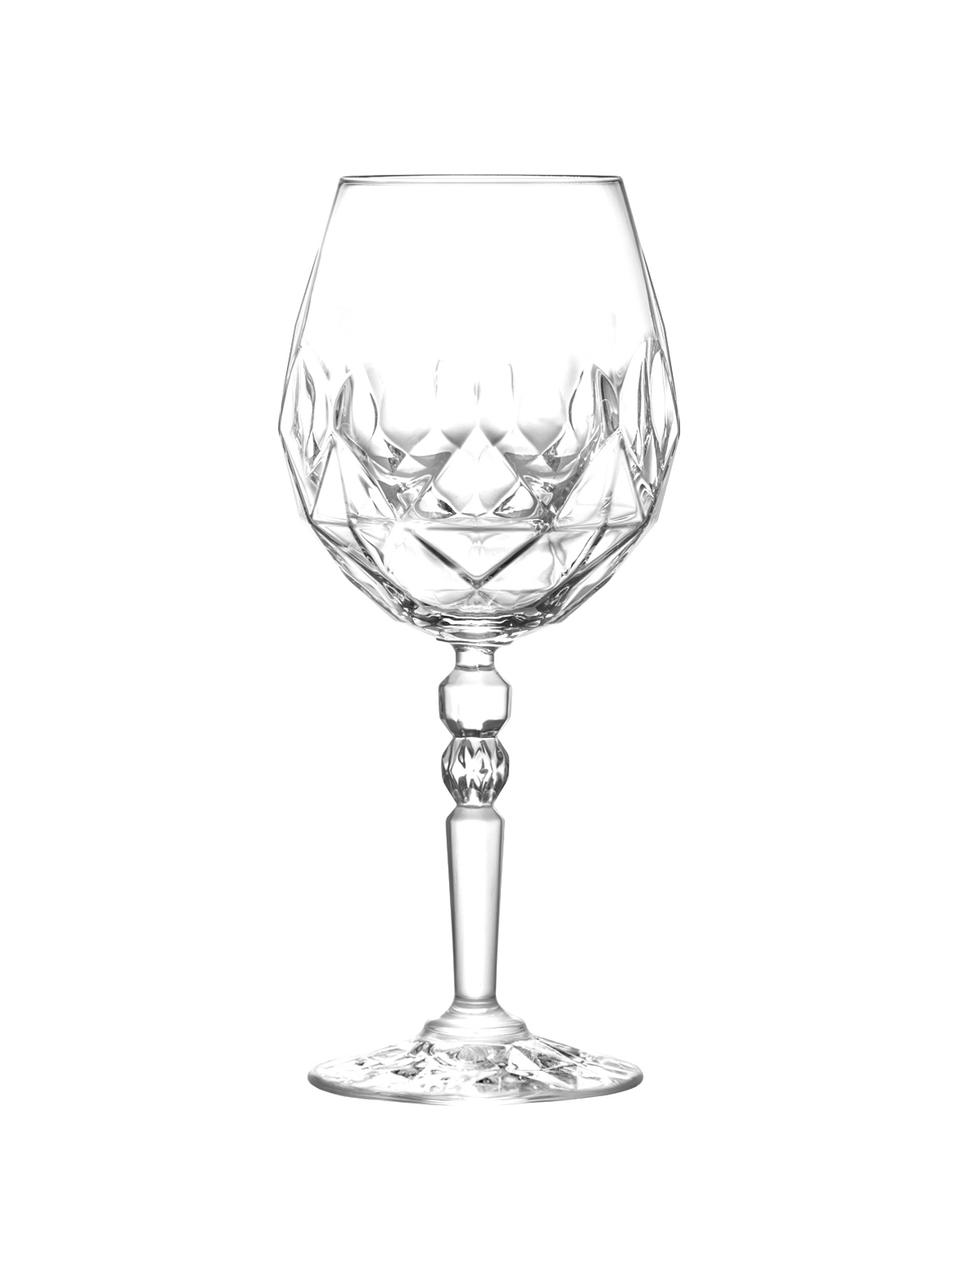 Křišťálová sklenice na červené víno Calicia, 6 ks, Křišťál Luxion, Transparentní, Ø 10 cm, V 23 cm, 530 ml